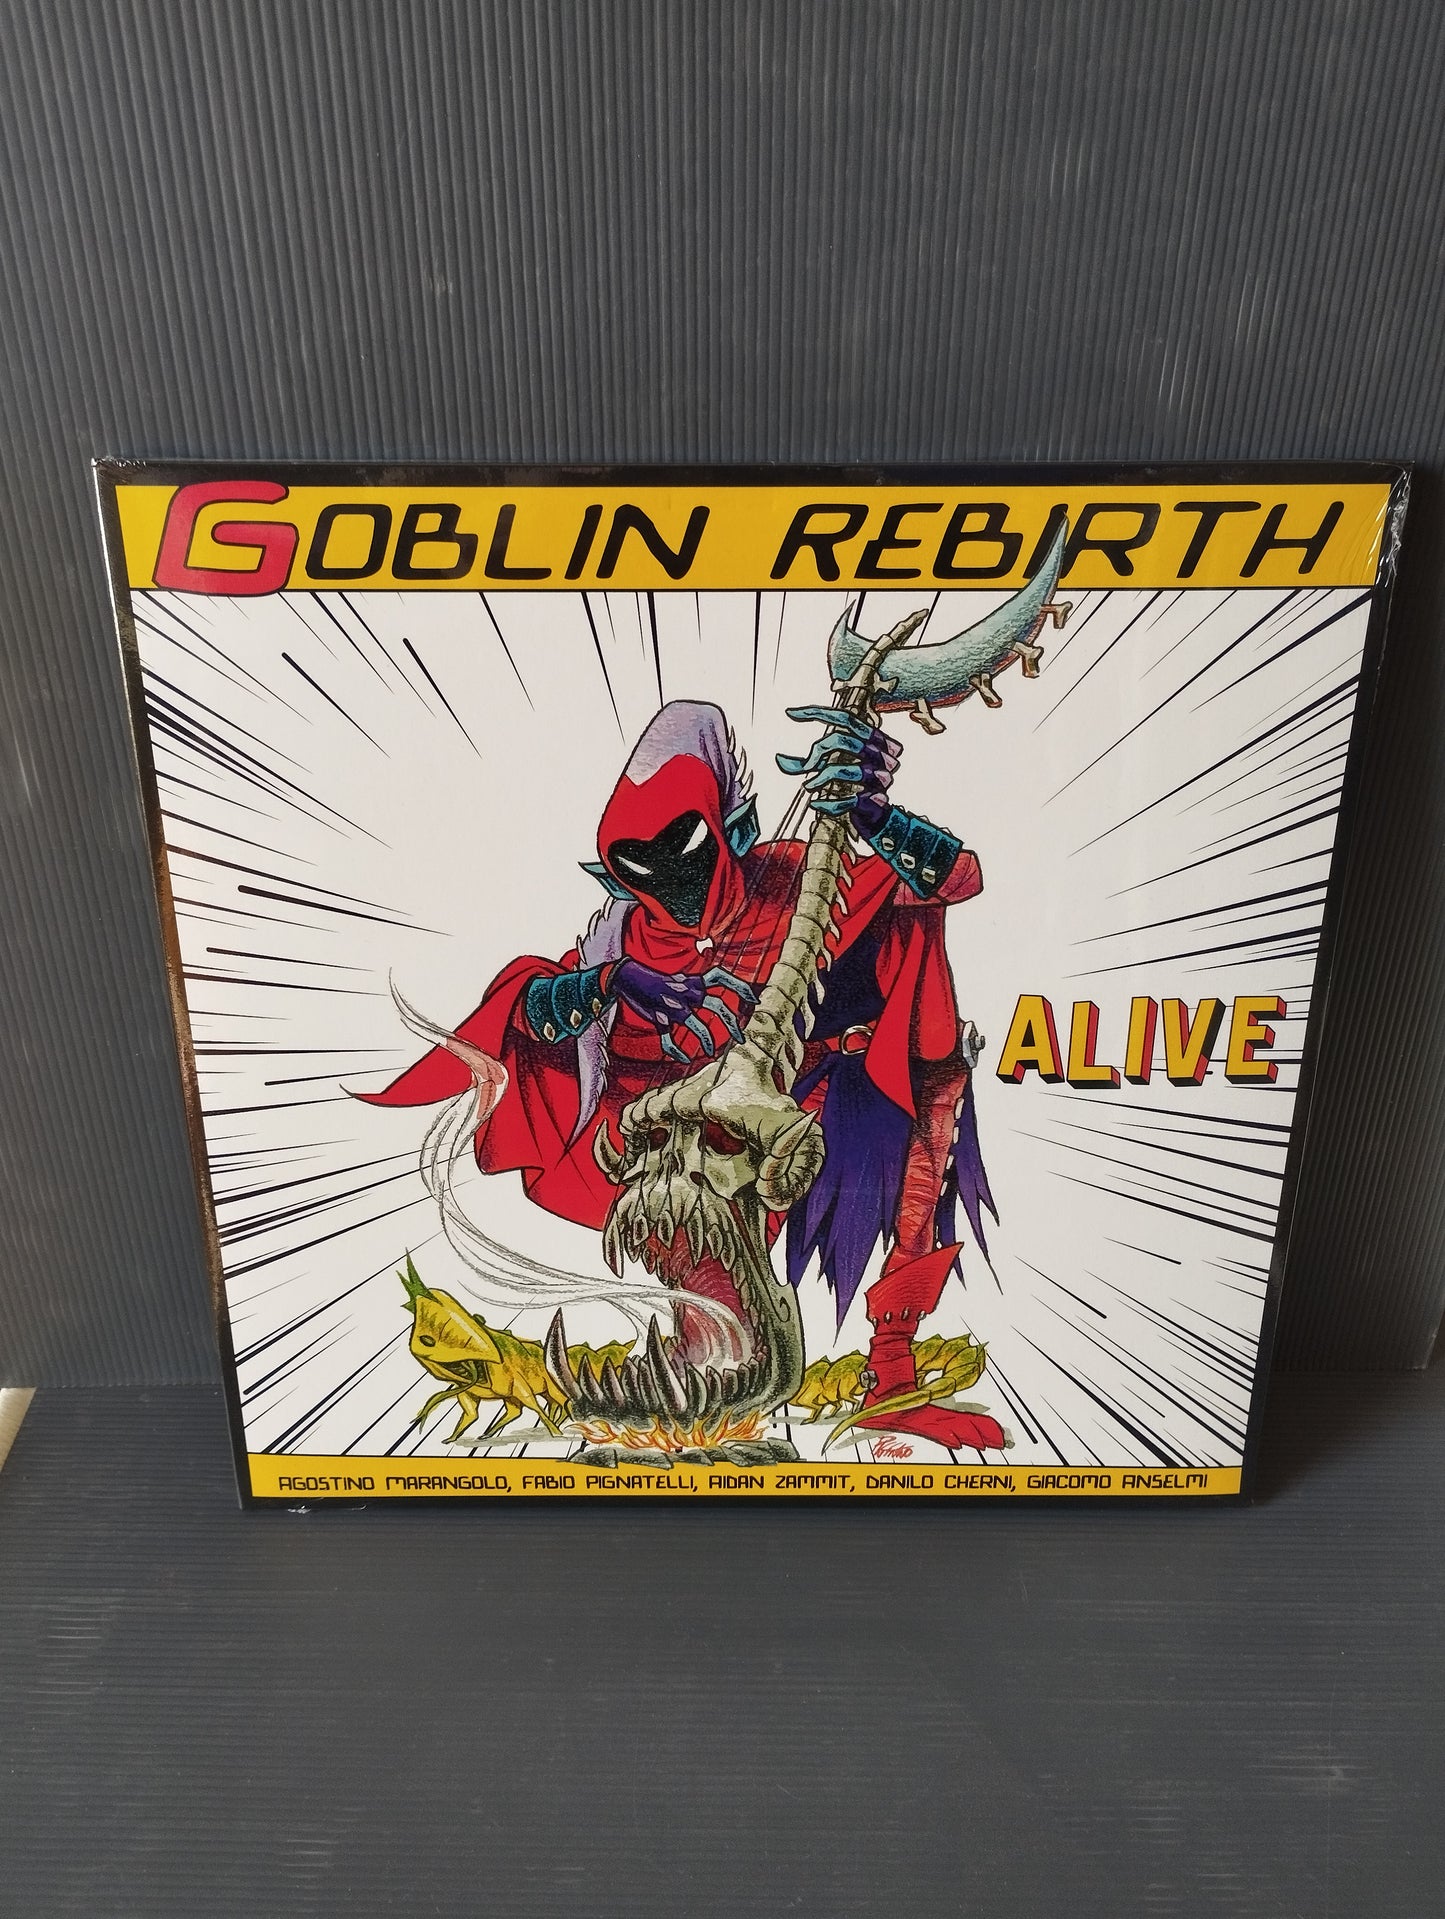 Alive" Goblin Rebirth Lp 33 giri

Edito nel 2020  da  Progressivamente/